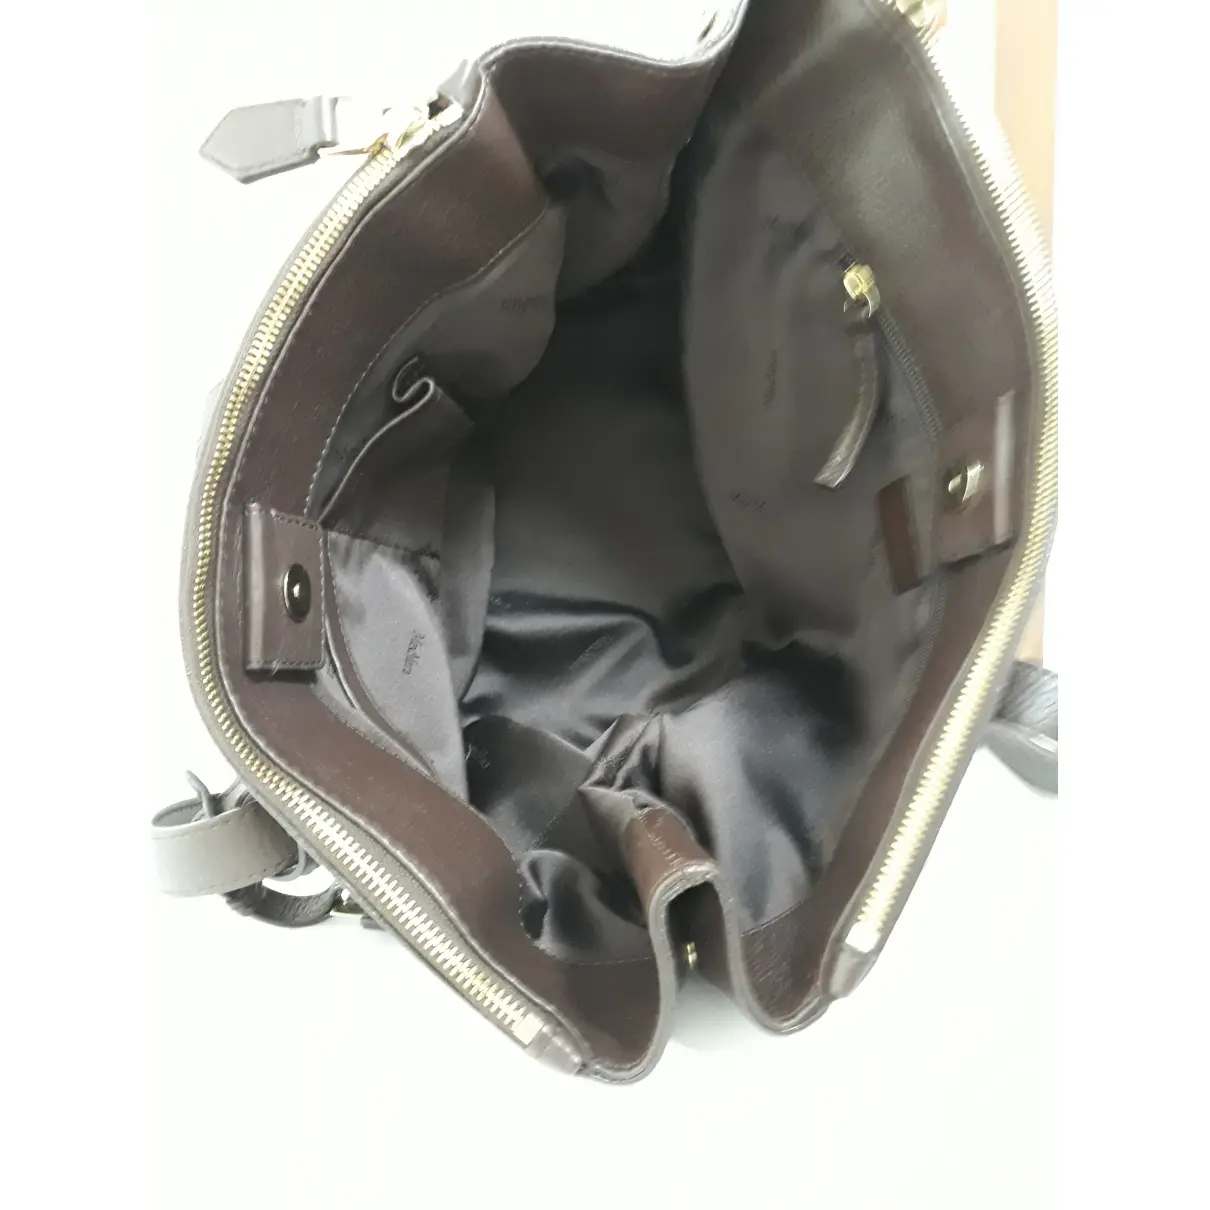 Luxury Max Mara Handbags Women